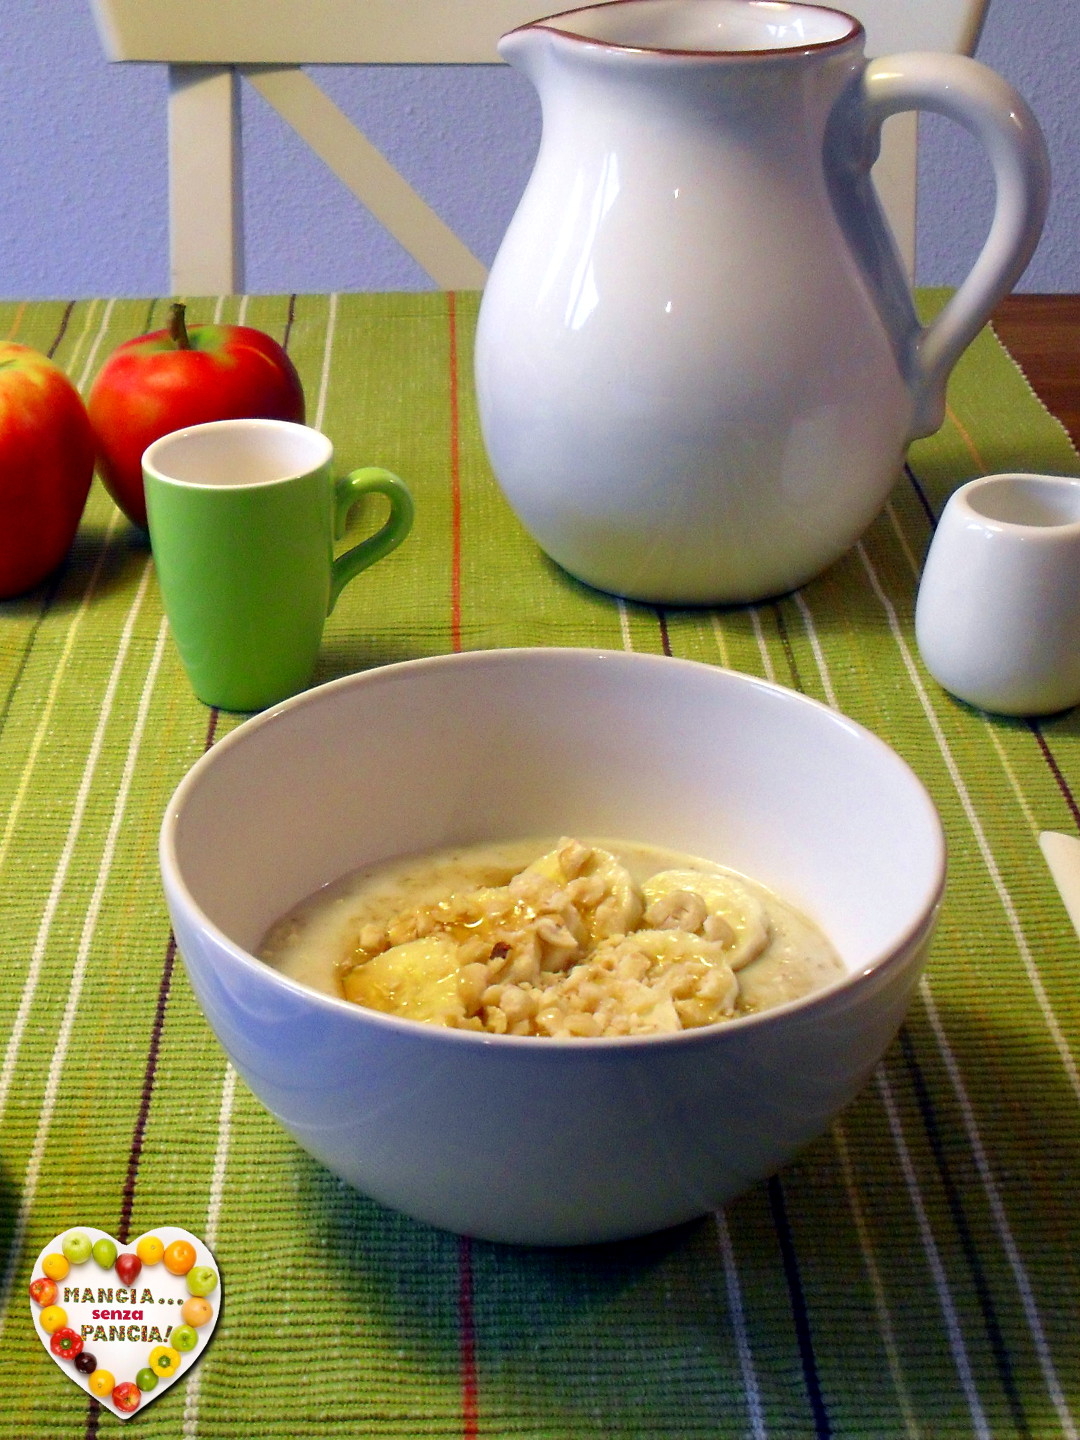 Porridge cremoso leggero, Mangia senza Pancia